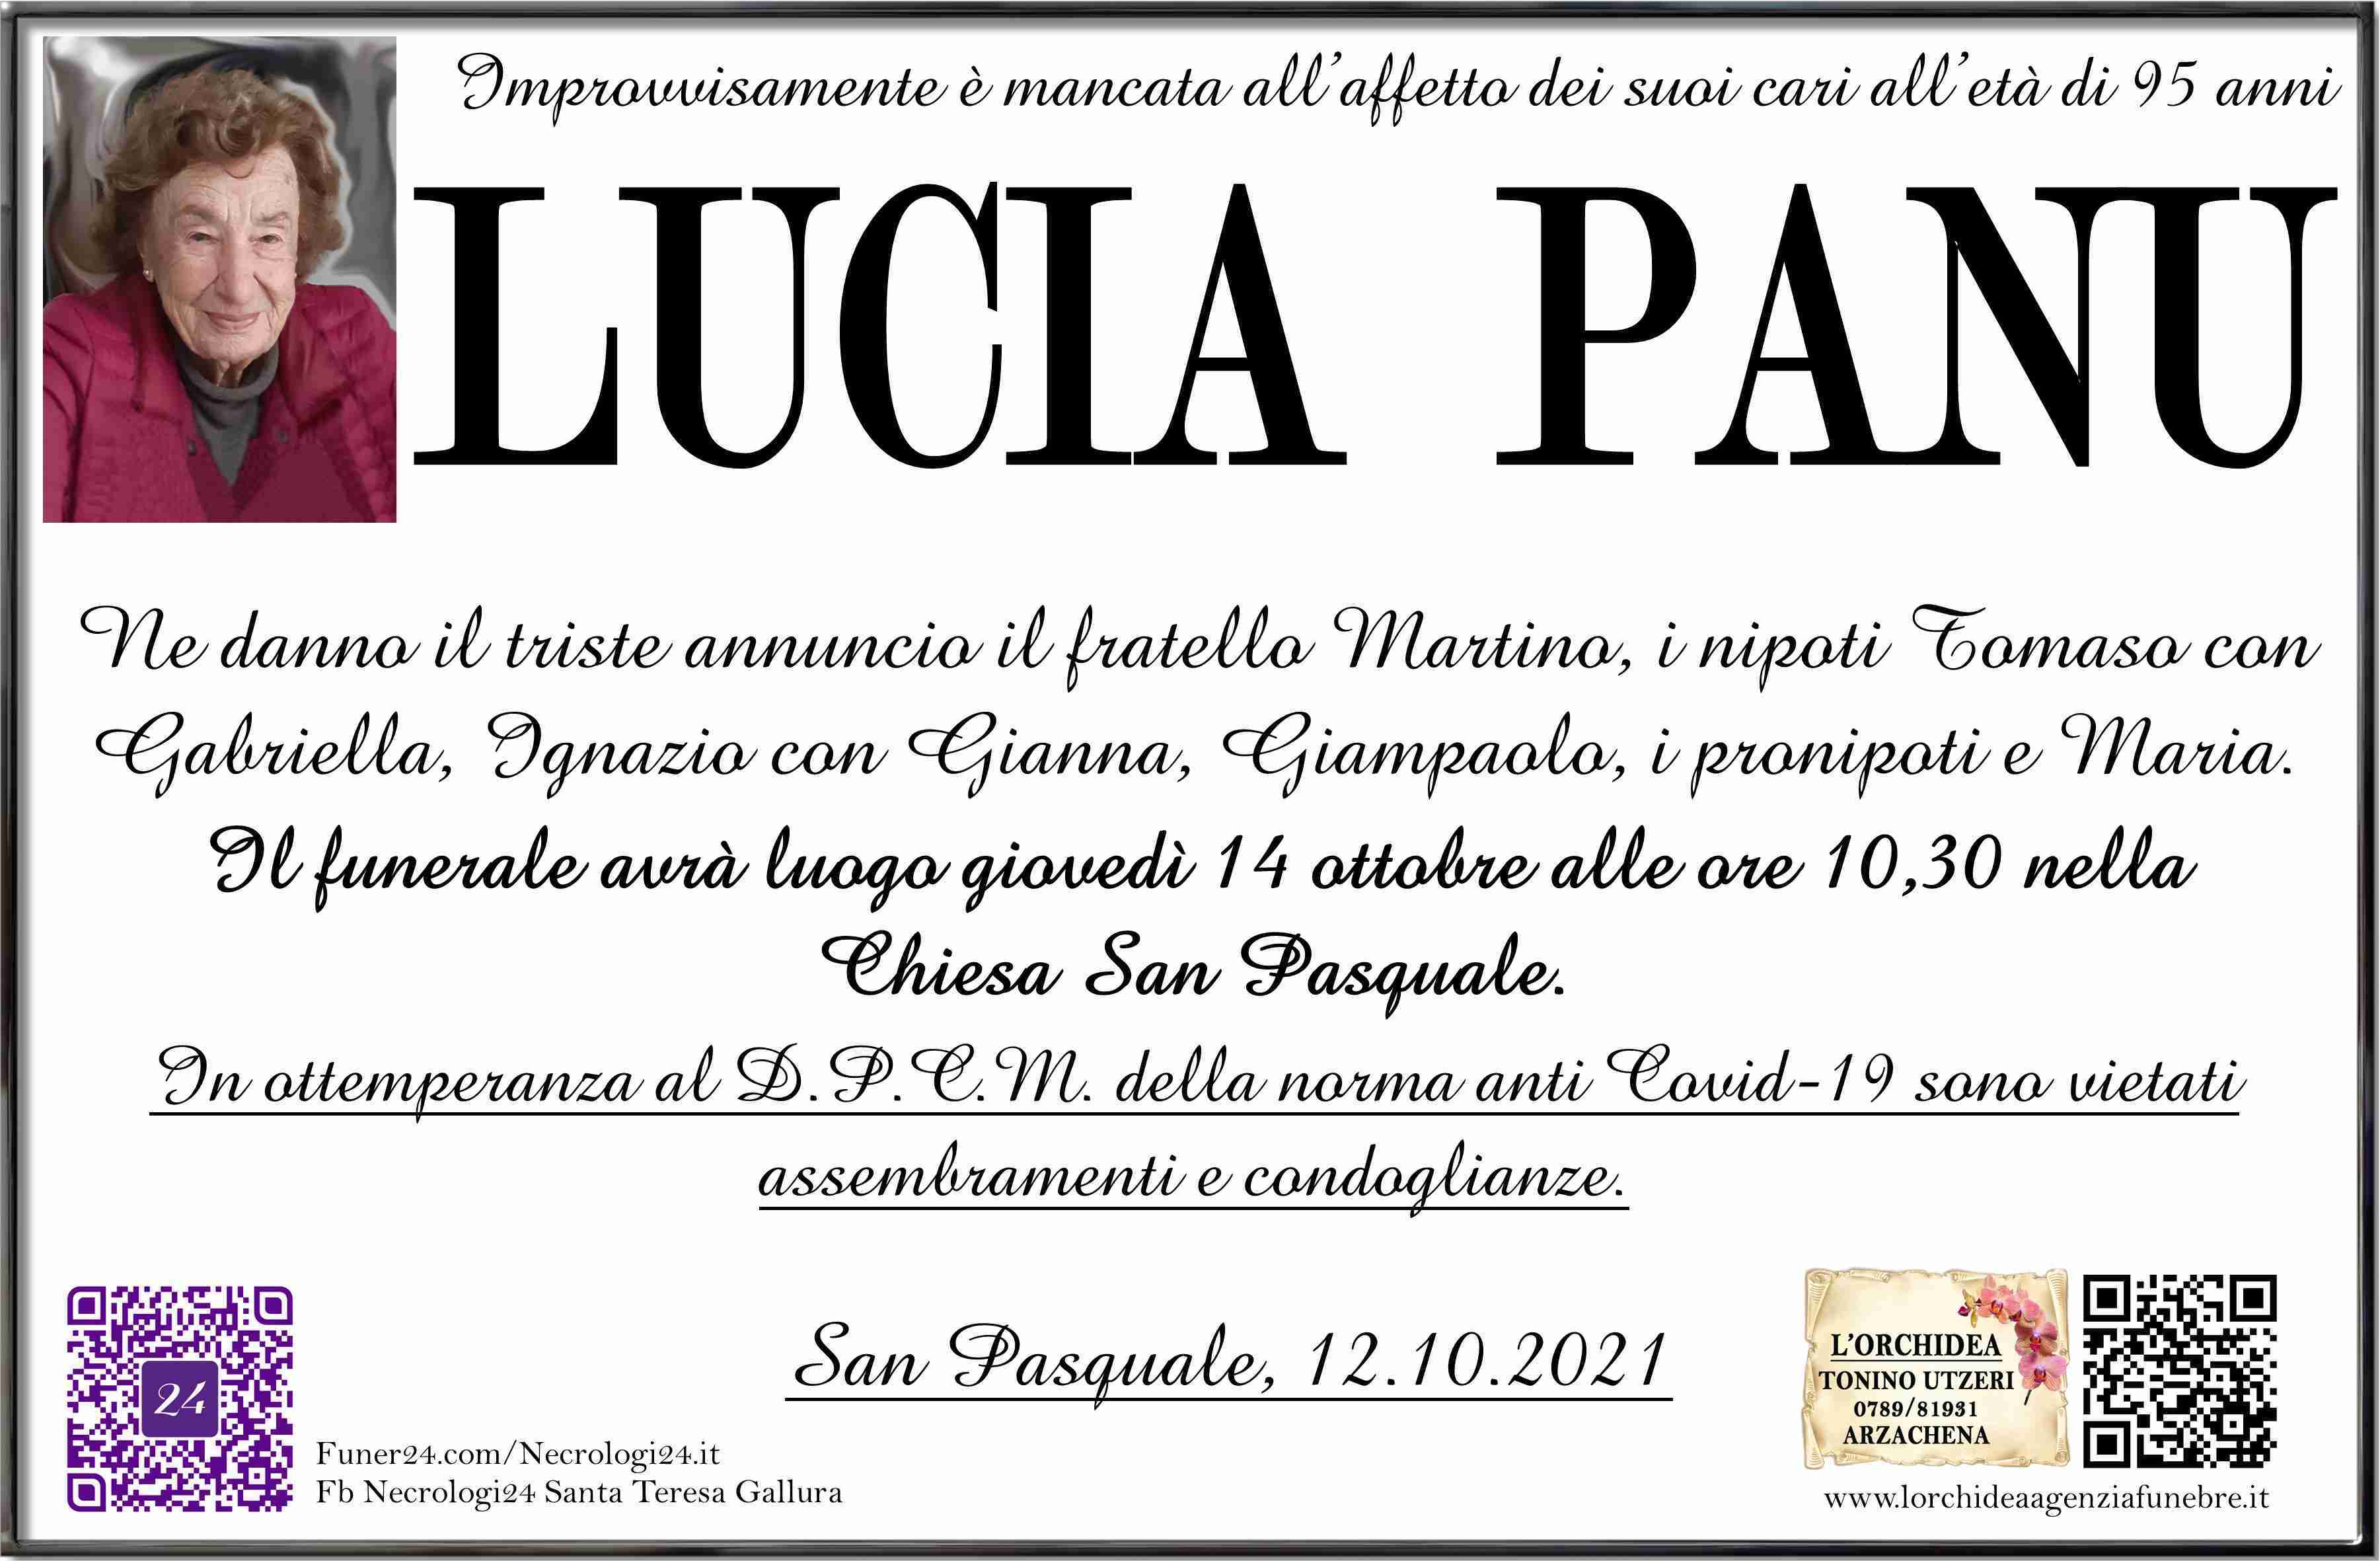 Lucia Panu